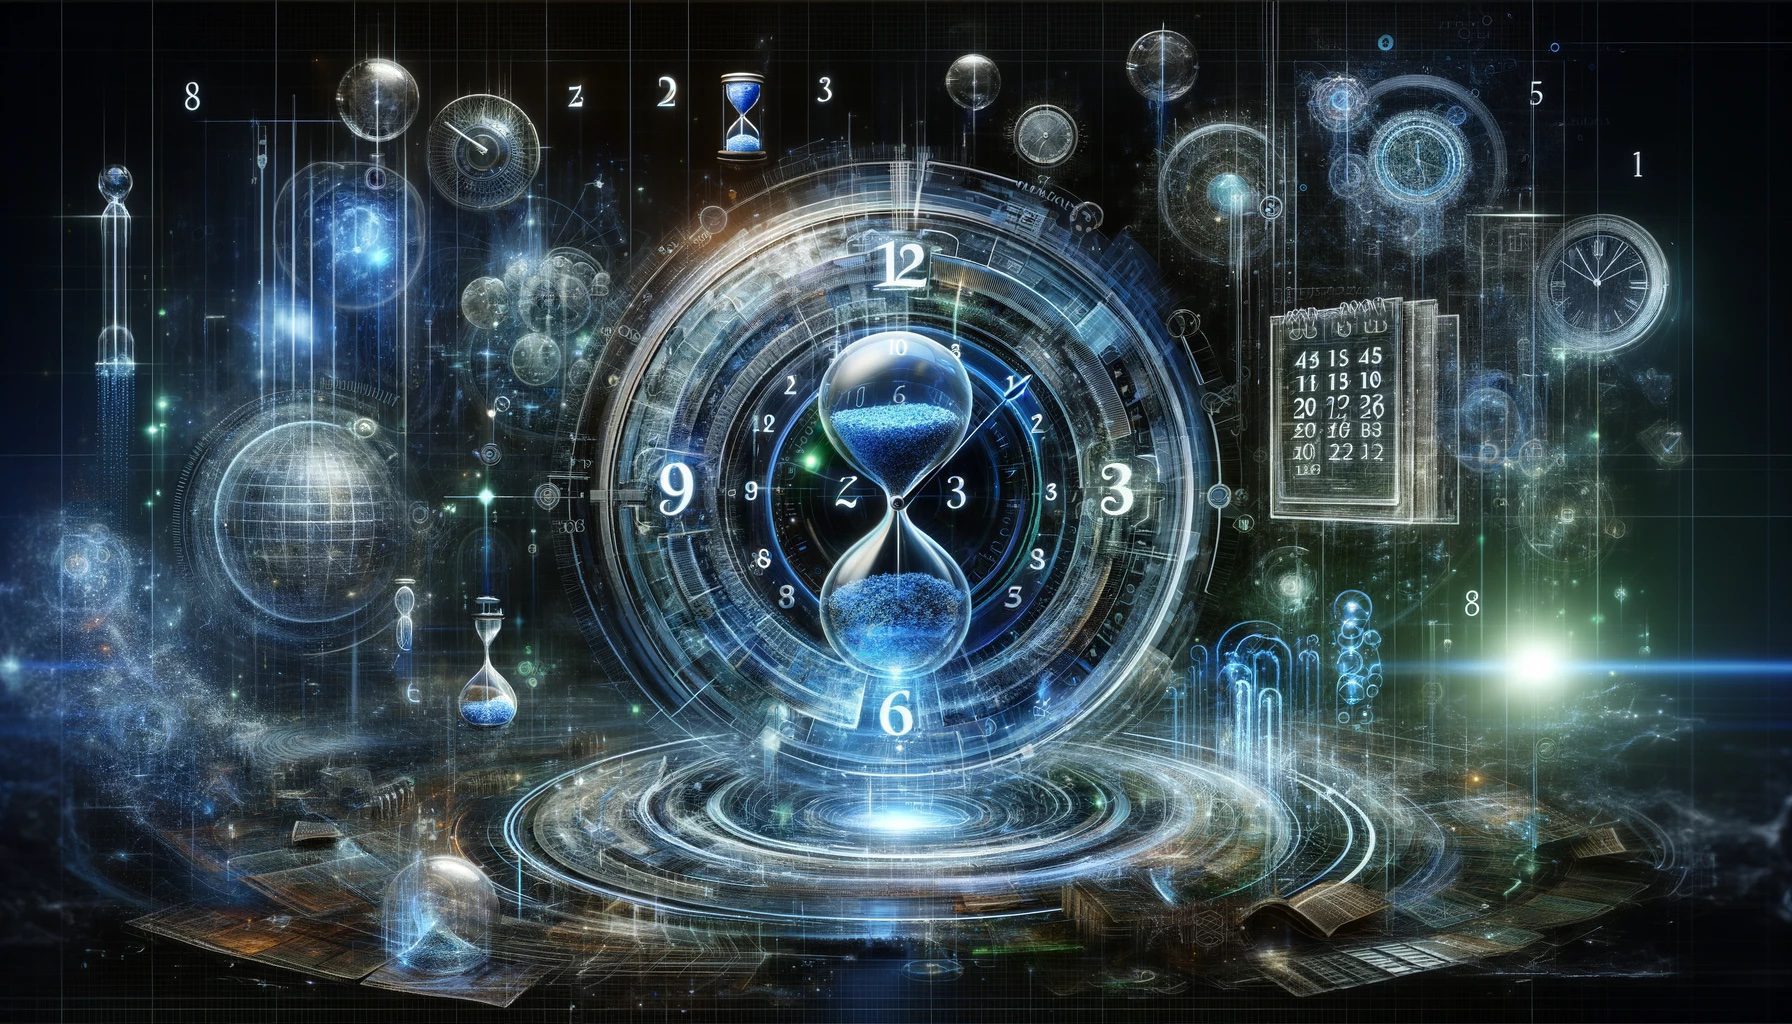 Obra de arte digital abstracta que muestra una cuenta regresiva futurista hacia el fin del mundo, simbolizada por un reloj digital desenfocado rodeado de símbolos flotantes del tiempo en un entorno cósmico.